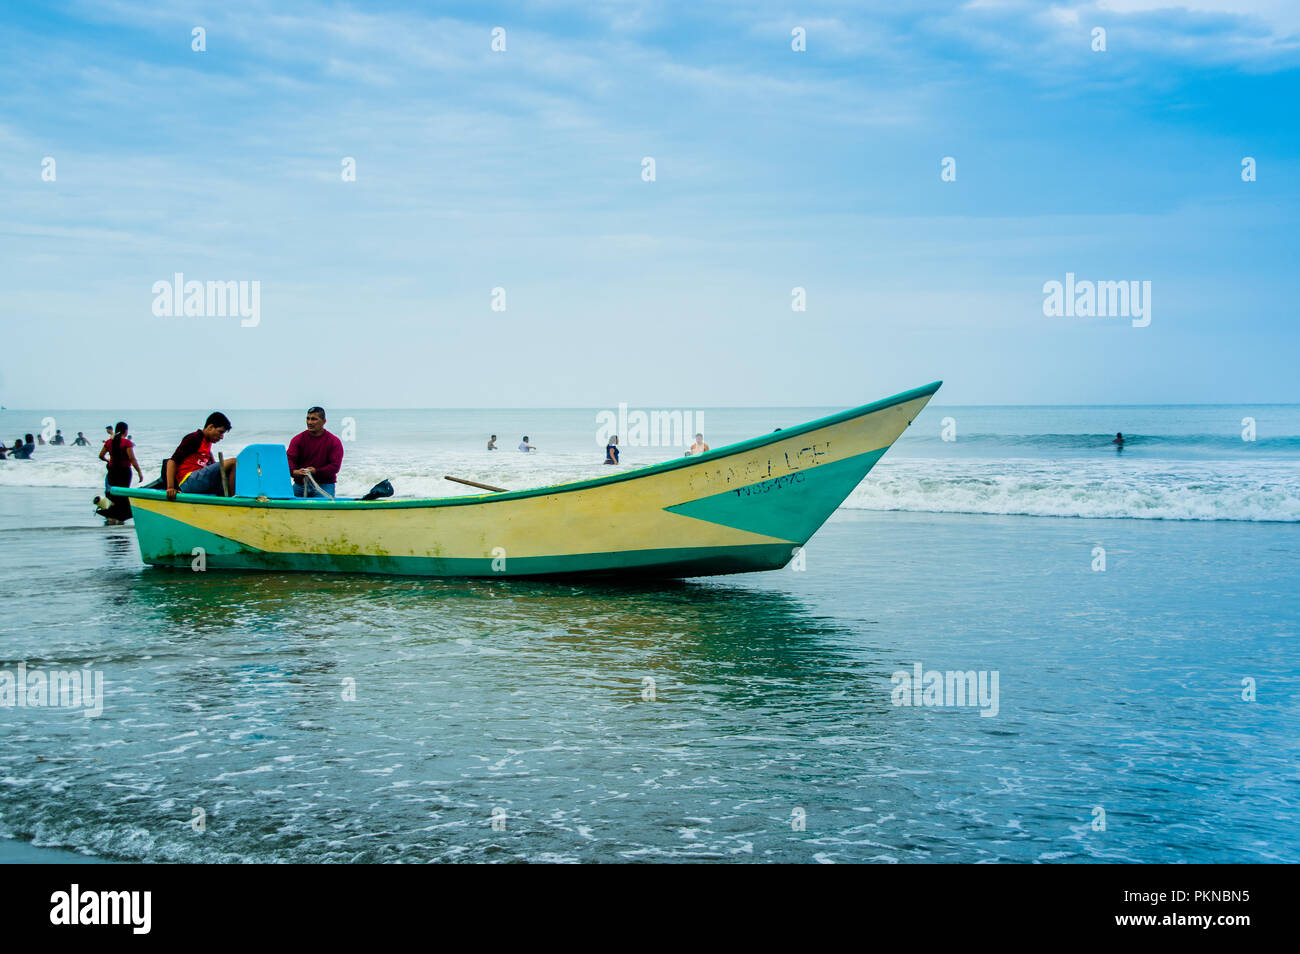 MANABI, ÉQUATEUR - Mai 29, 2018 : vue extérieure de pêcheur en arrivant avec des poissons à la plage de Cojimies Manabi Banque D'Images